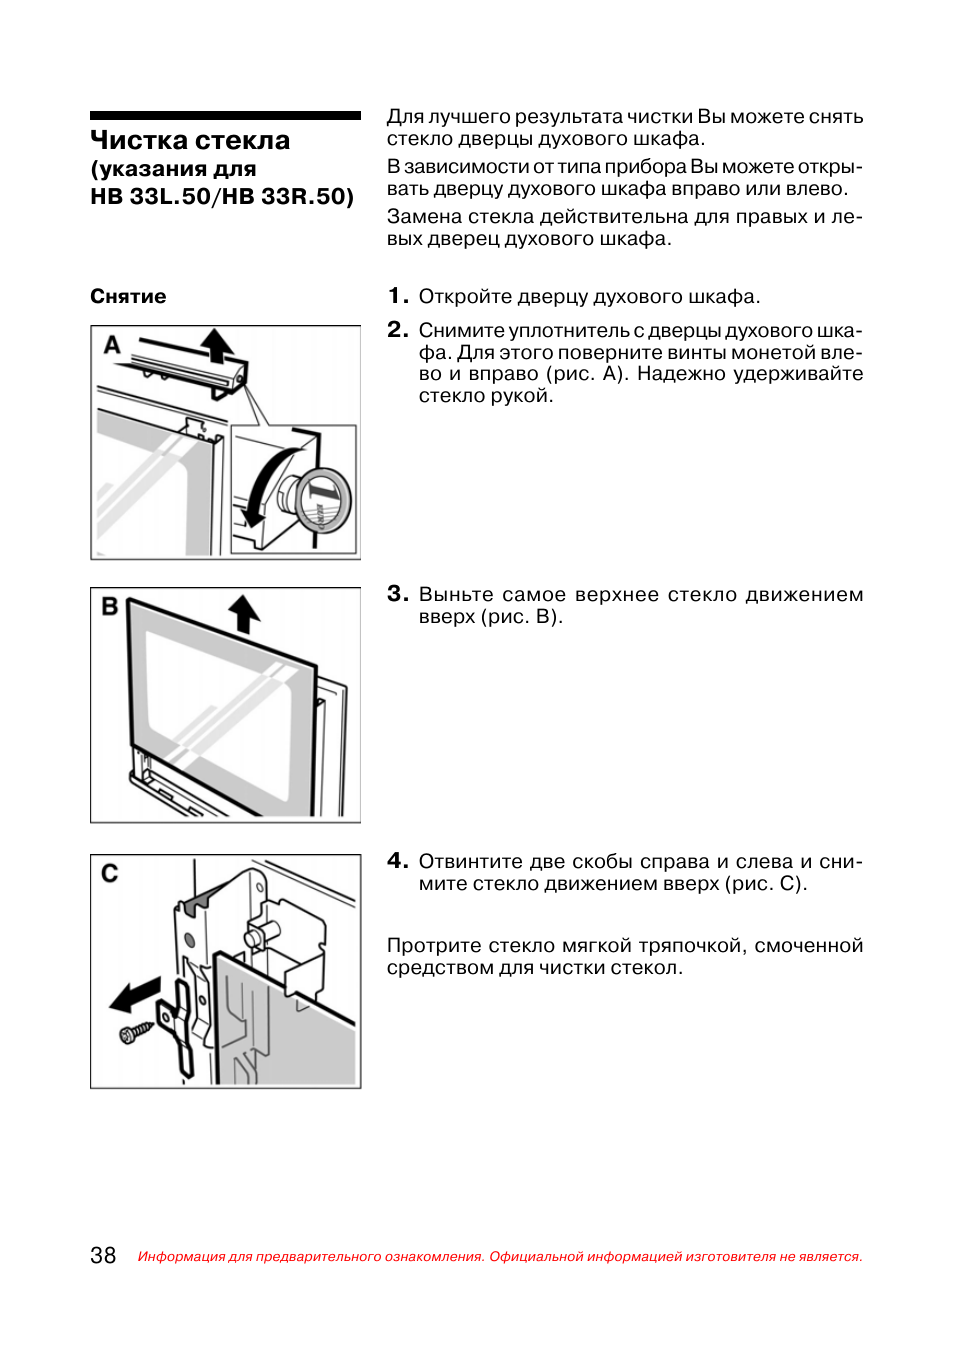 Духовой шкаф Siemens инструкция по эксплуатации